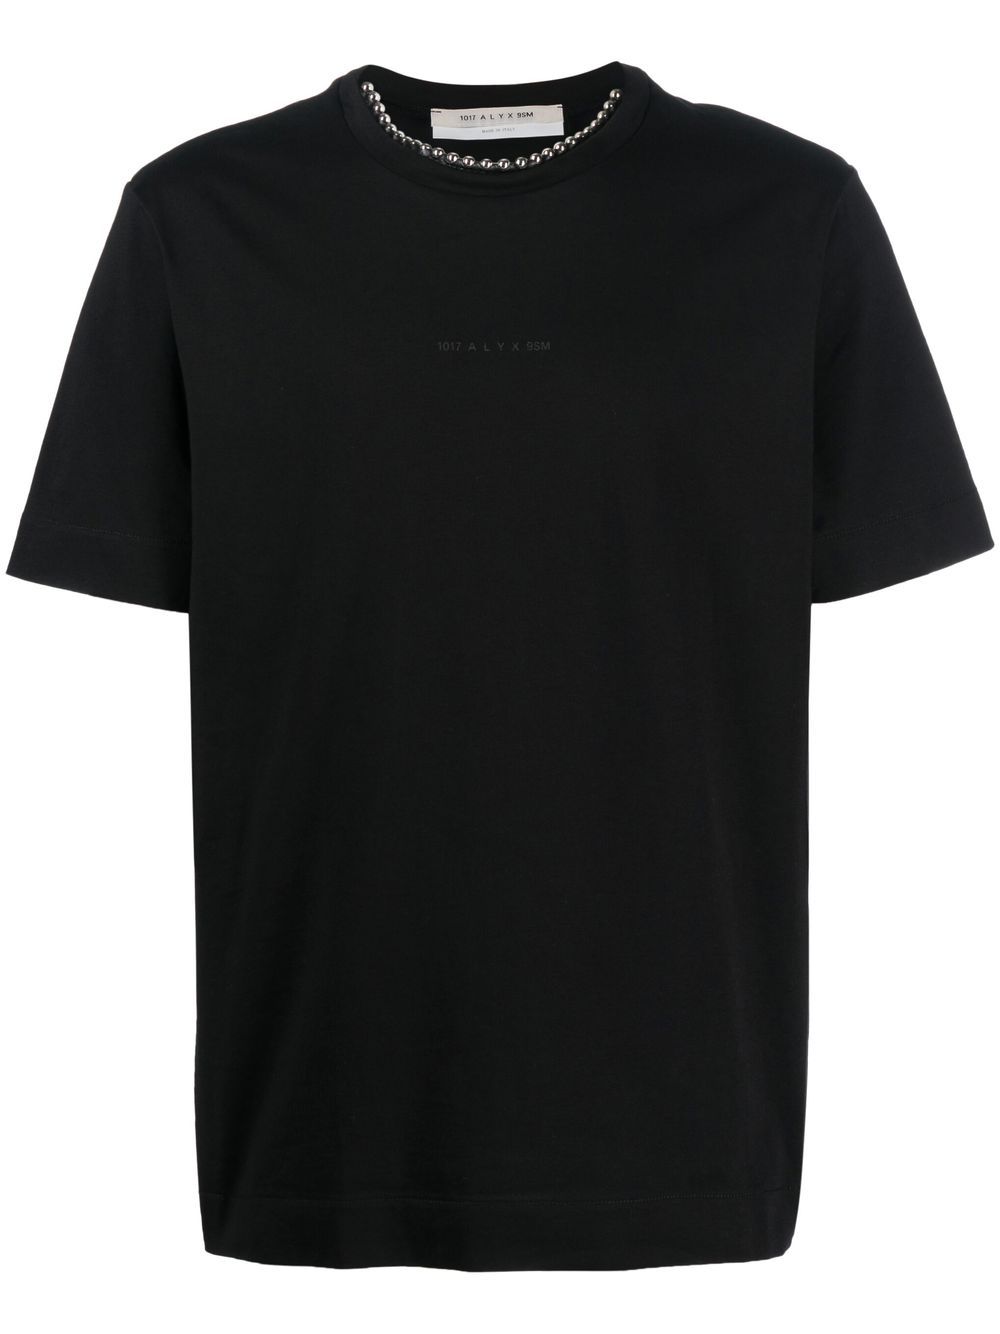 1017 ALYX 9SM logo-print short-sleeve T-shirt - Black von 1017 ALYX 9SM